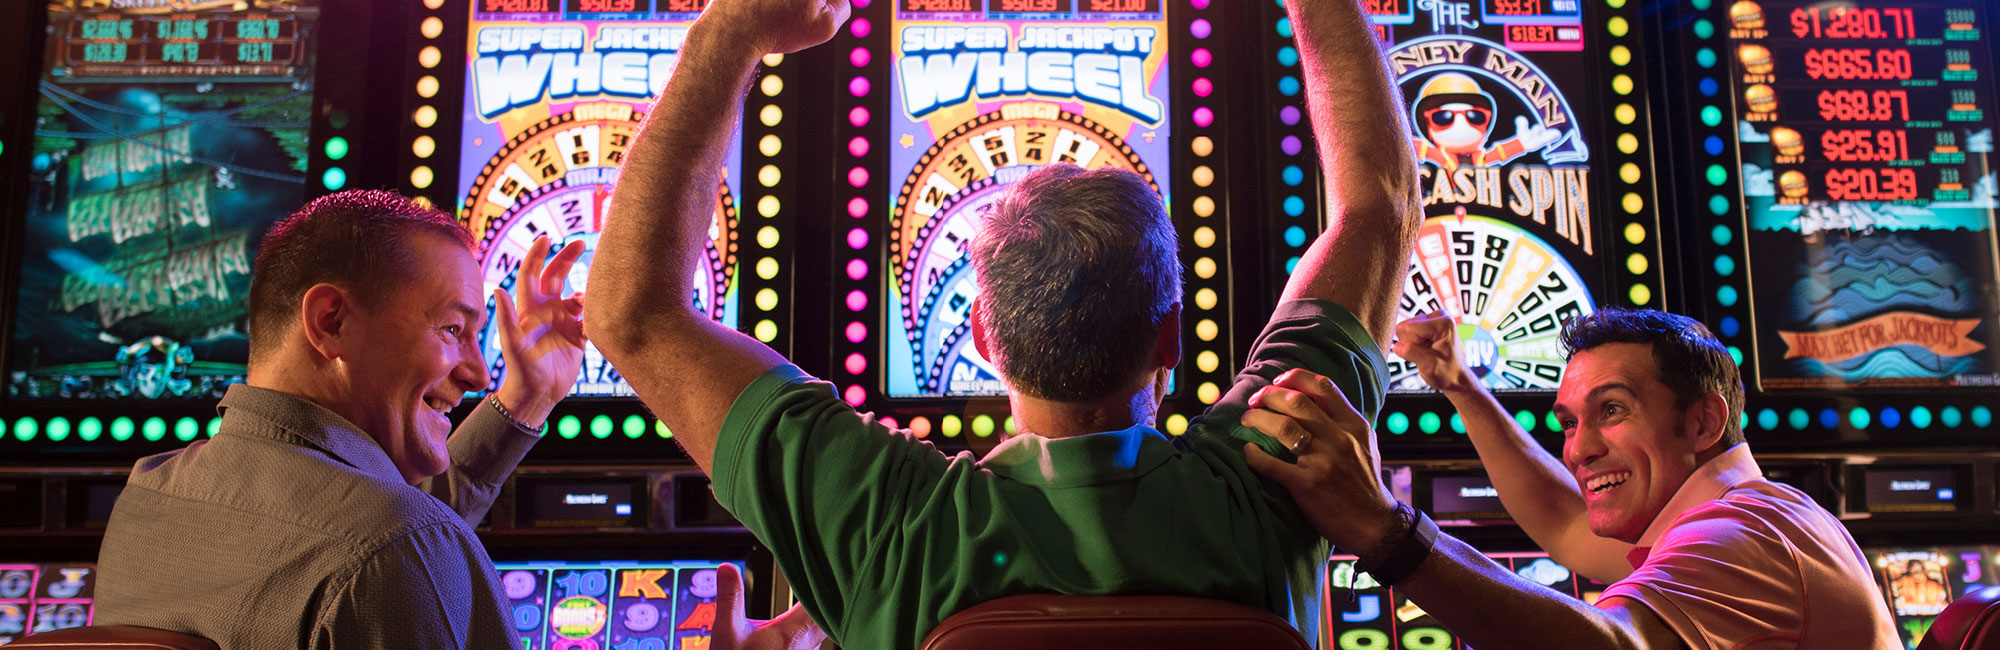 Three men winning at the slot machines